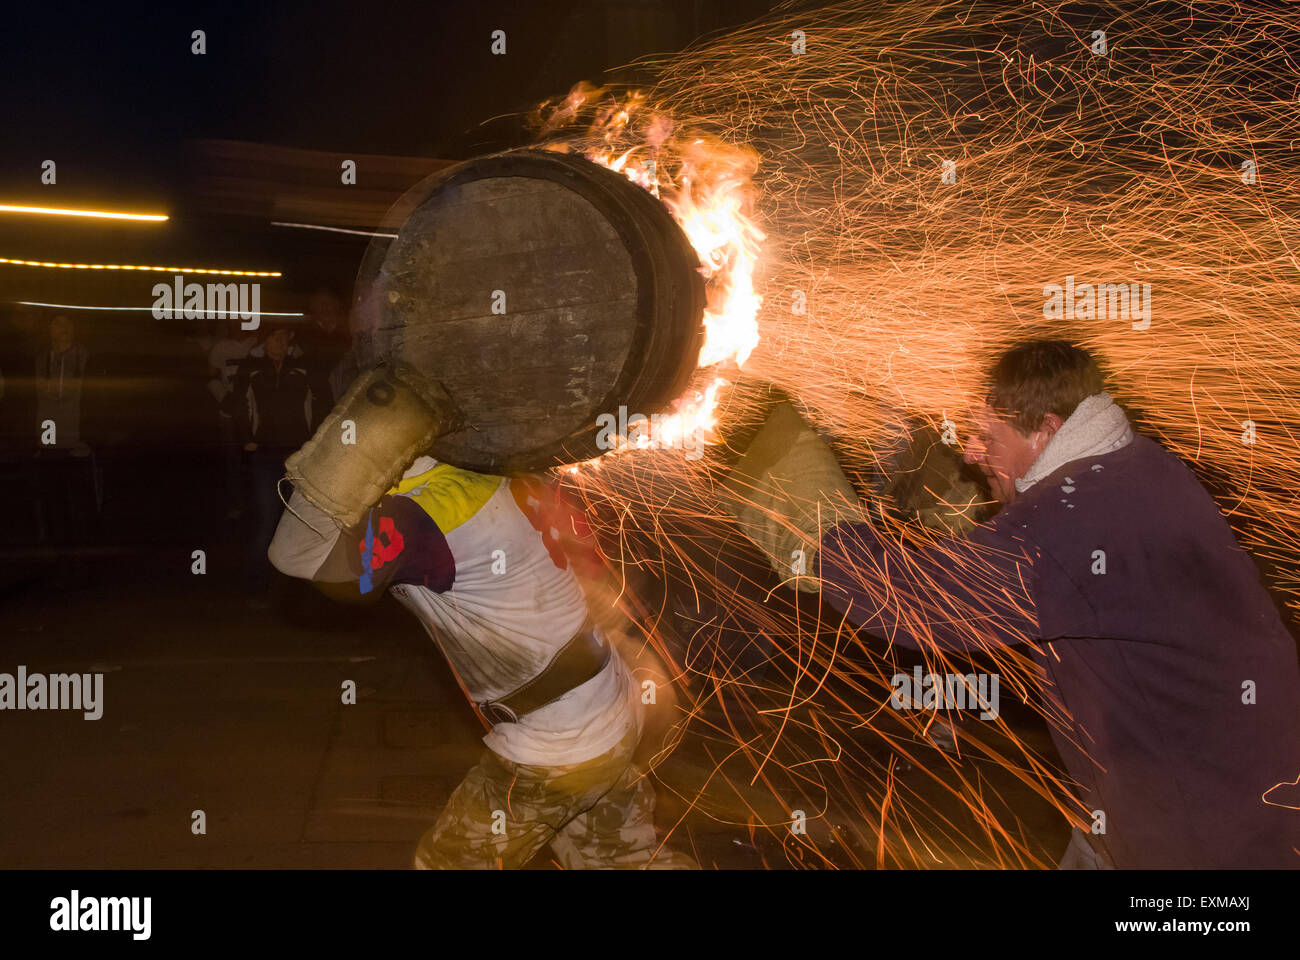 Brennenden Fass eine Dusche der Funken während Yonder Straße anlässlich Bonfire Night, 5 November, bei den Festspielen Tar Barrel schon St Mary, Devon, England versenden. Stockfoto